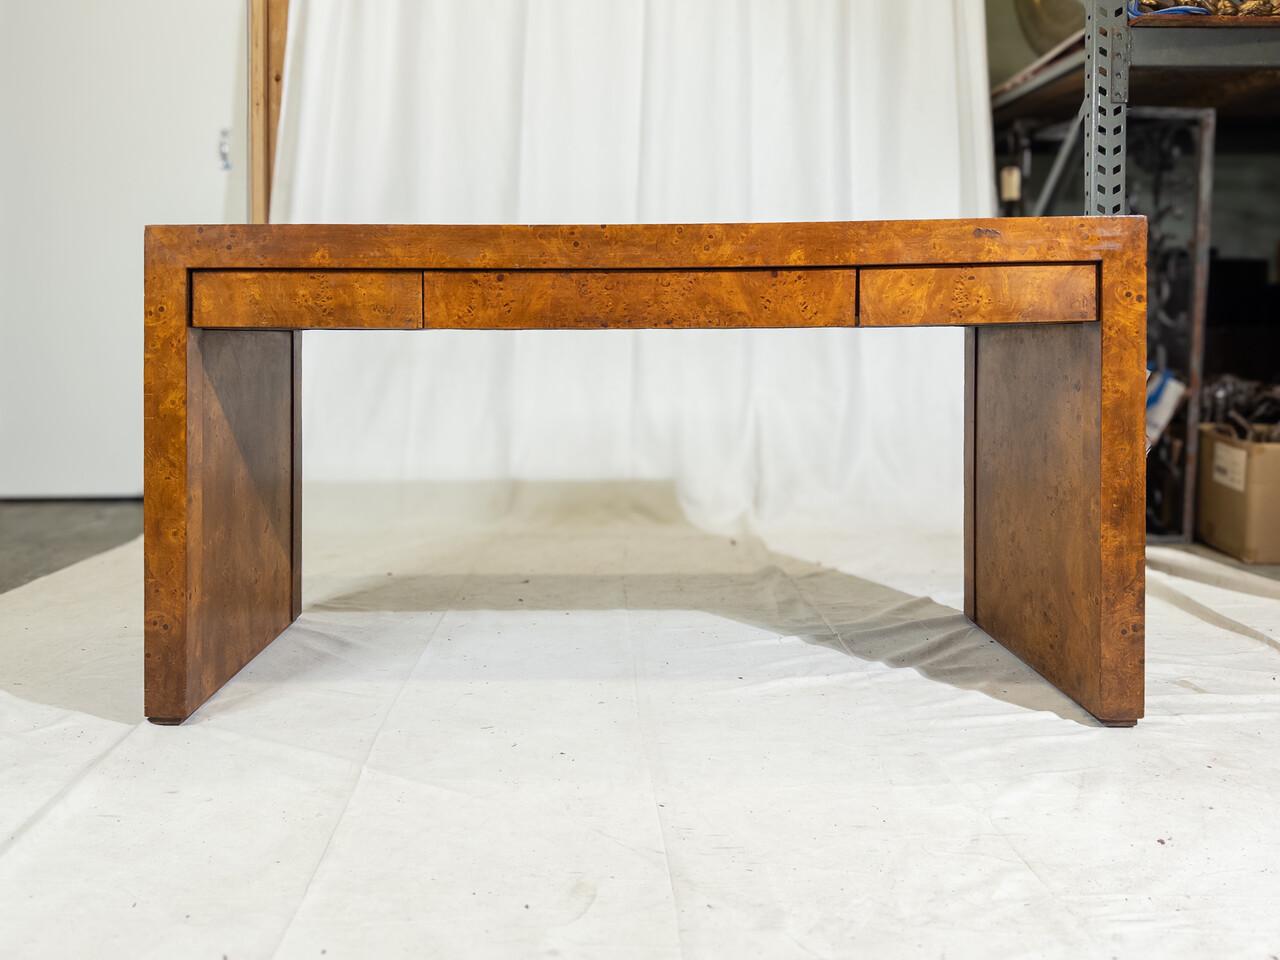 Dieser exquisite Schreibtisch mit dem kultigen Charme des modernen Designs aus der Mitte des Jahrhunderts hat ein Wurzelholz-Finish, das Wärme und Raffinesse in jeden Raum bringt. Mit seinen drei geräumigen Schubladen bietet er reichlich Stauraum